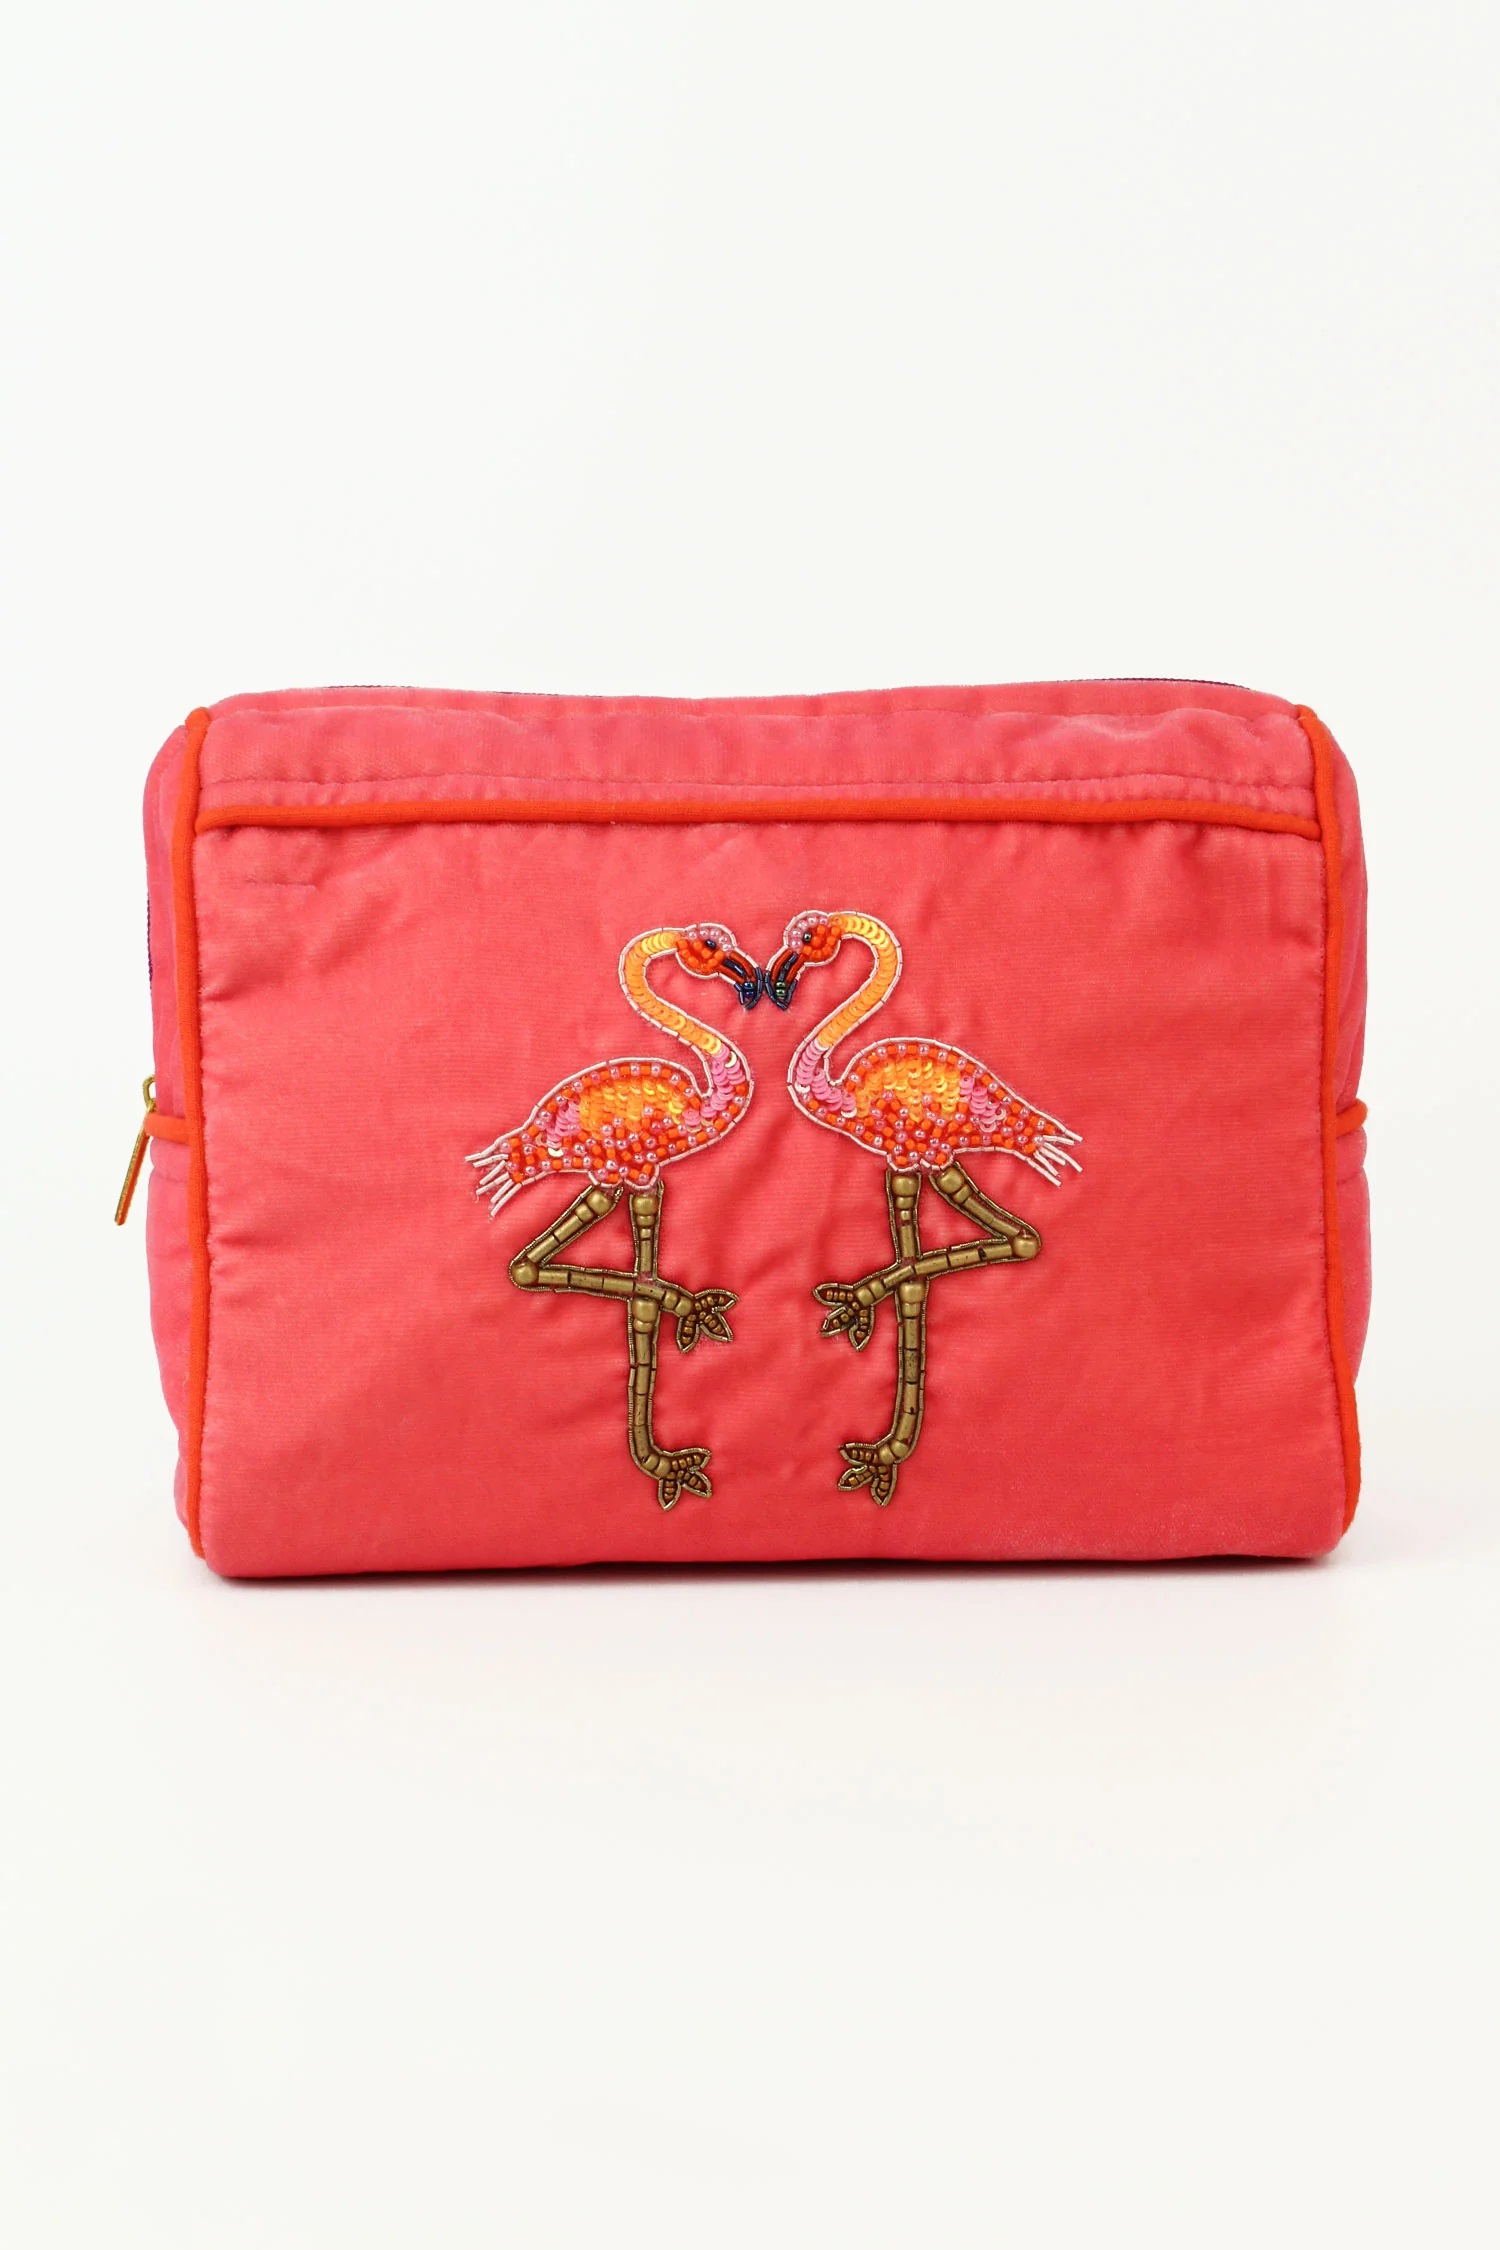 My Doris Pink Flamingo Make Up Bag